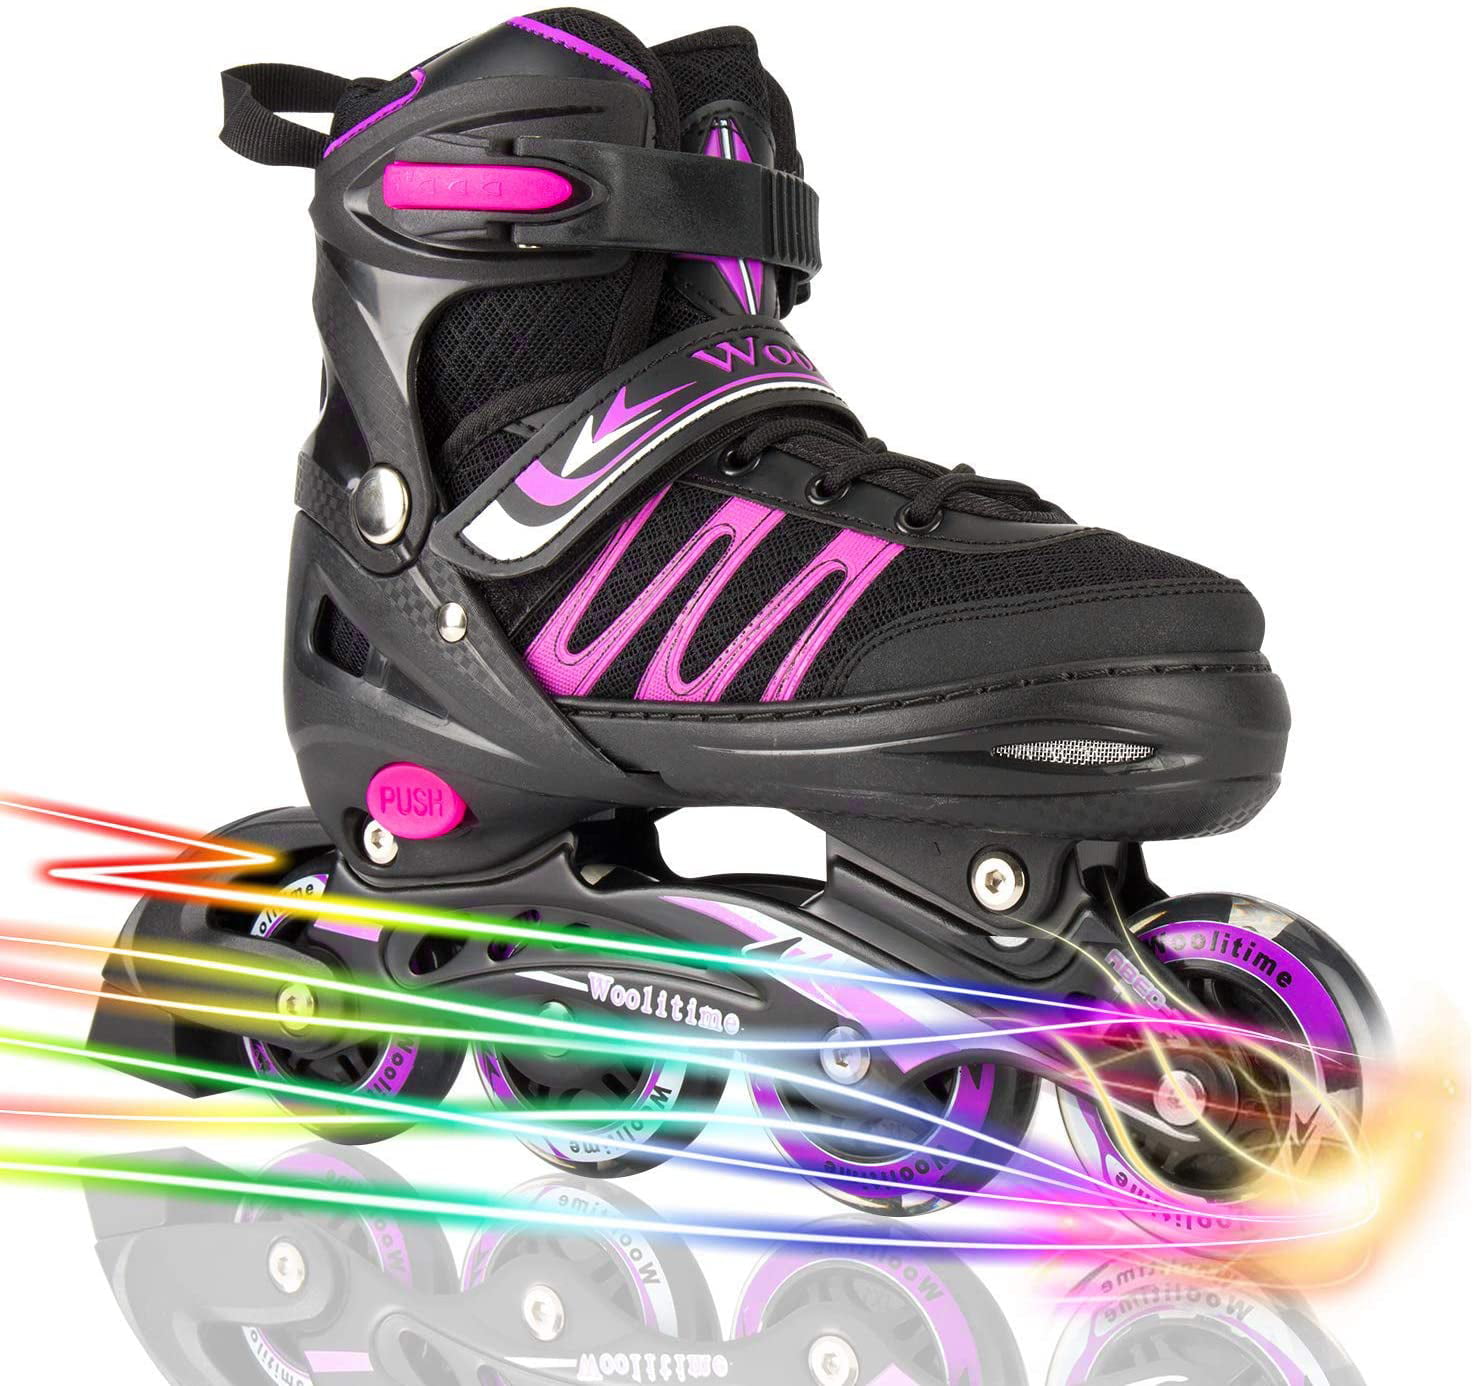 Inline Skates Kids Roller Blades with Light Up Wheels Kids Inline Skates Adjustable Size ABEC 7 Bearings Mixhomic Adjustable Roller Skates Boys Girls Inline Roller Skates for Kids/Boys/Girls 